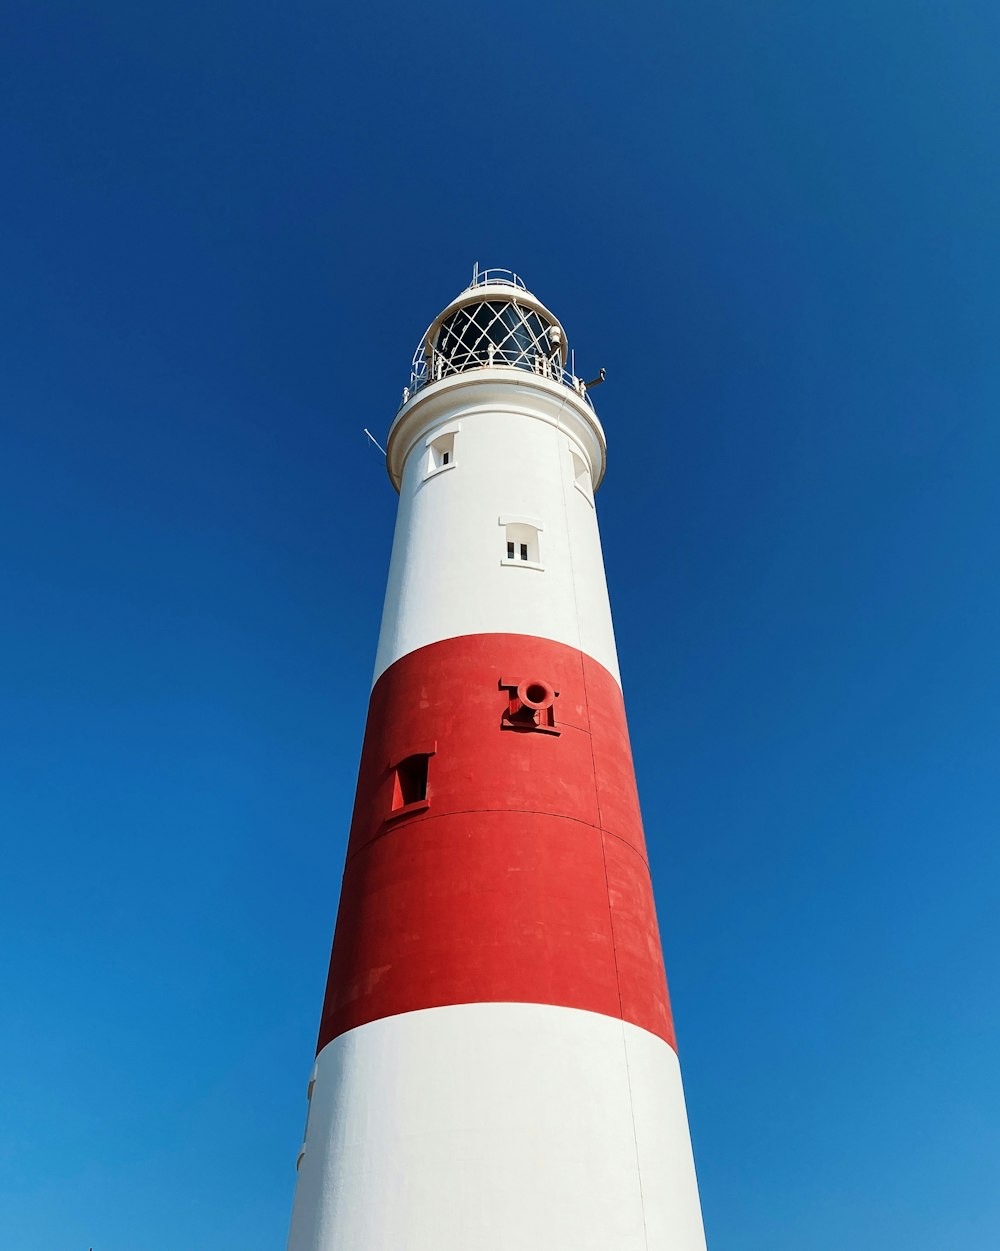 a lighthouse against a blue sky